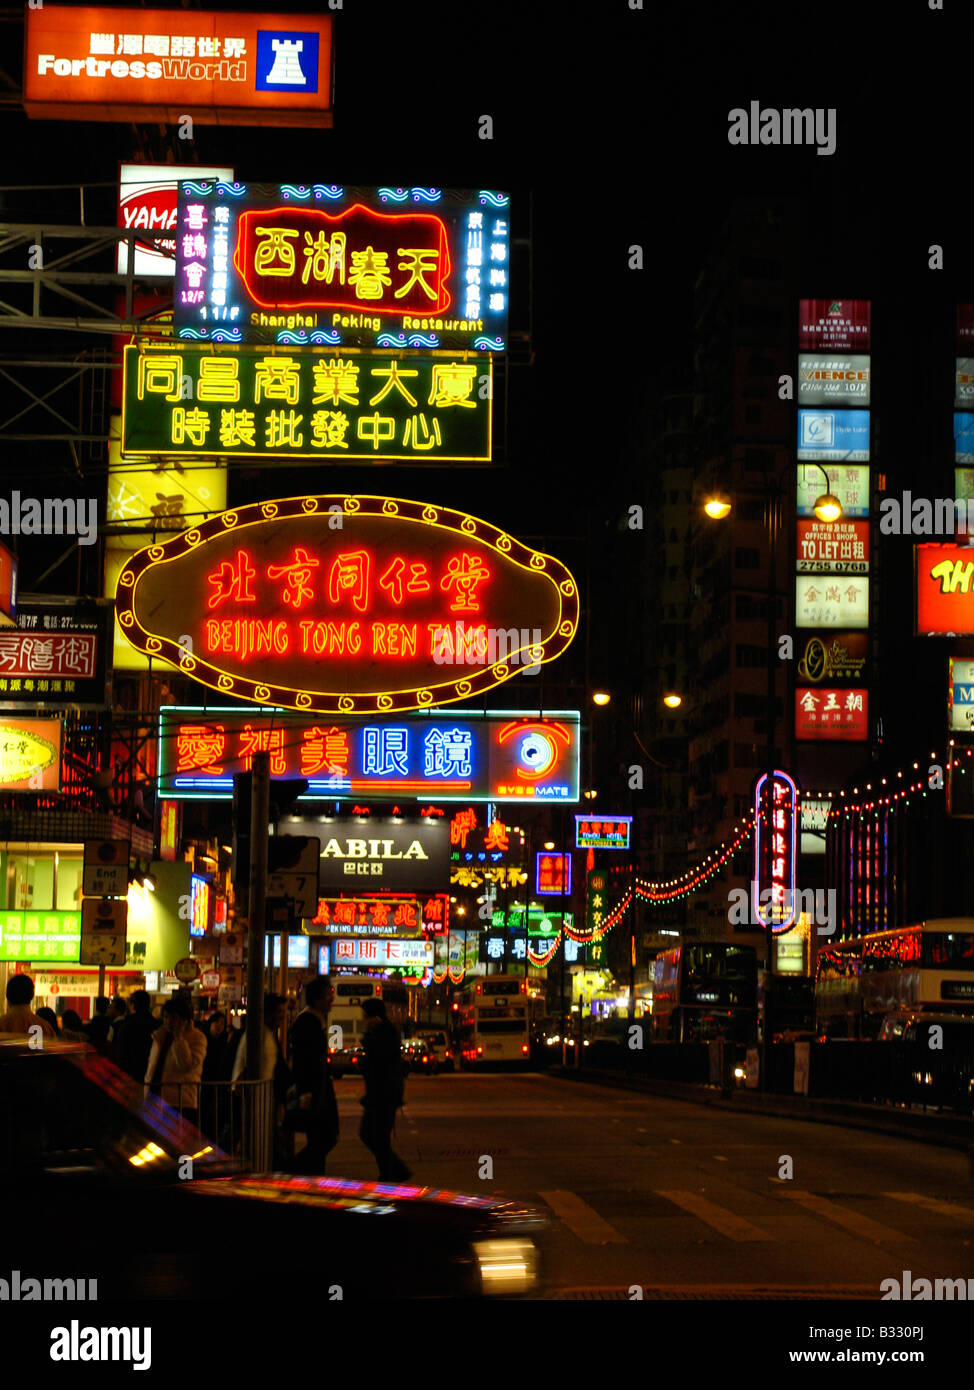 The populair shoppingstreet Nathan Road in Kowloon at night, Hongkong, China Stock Photo